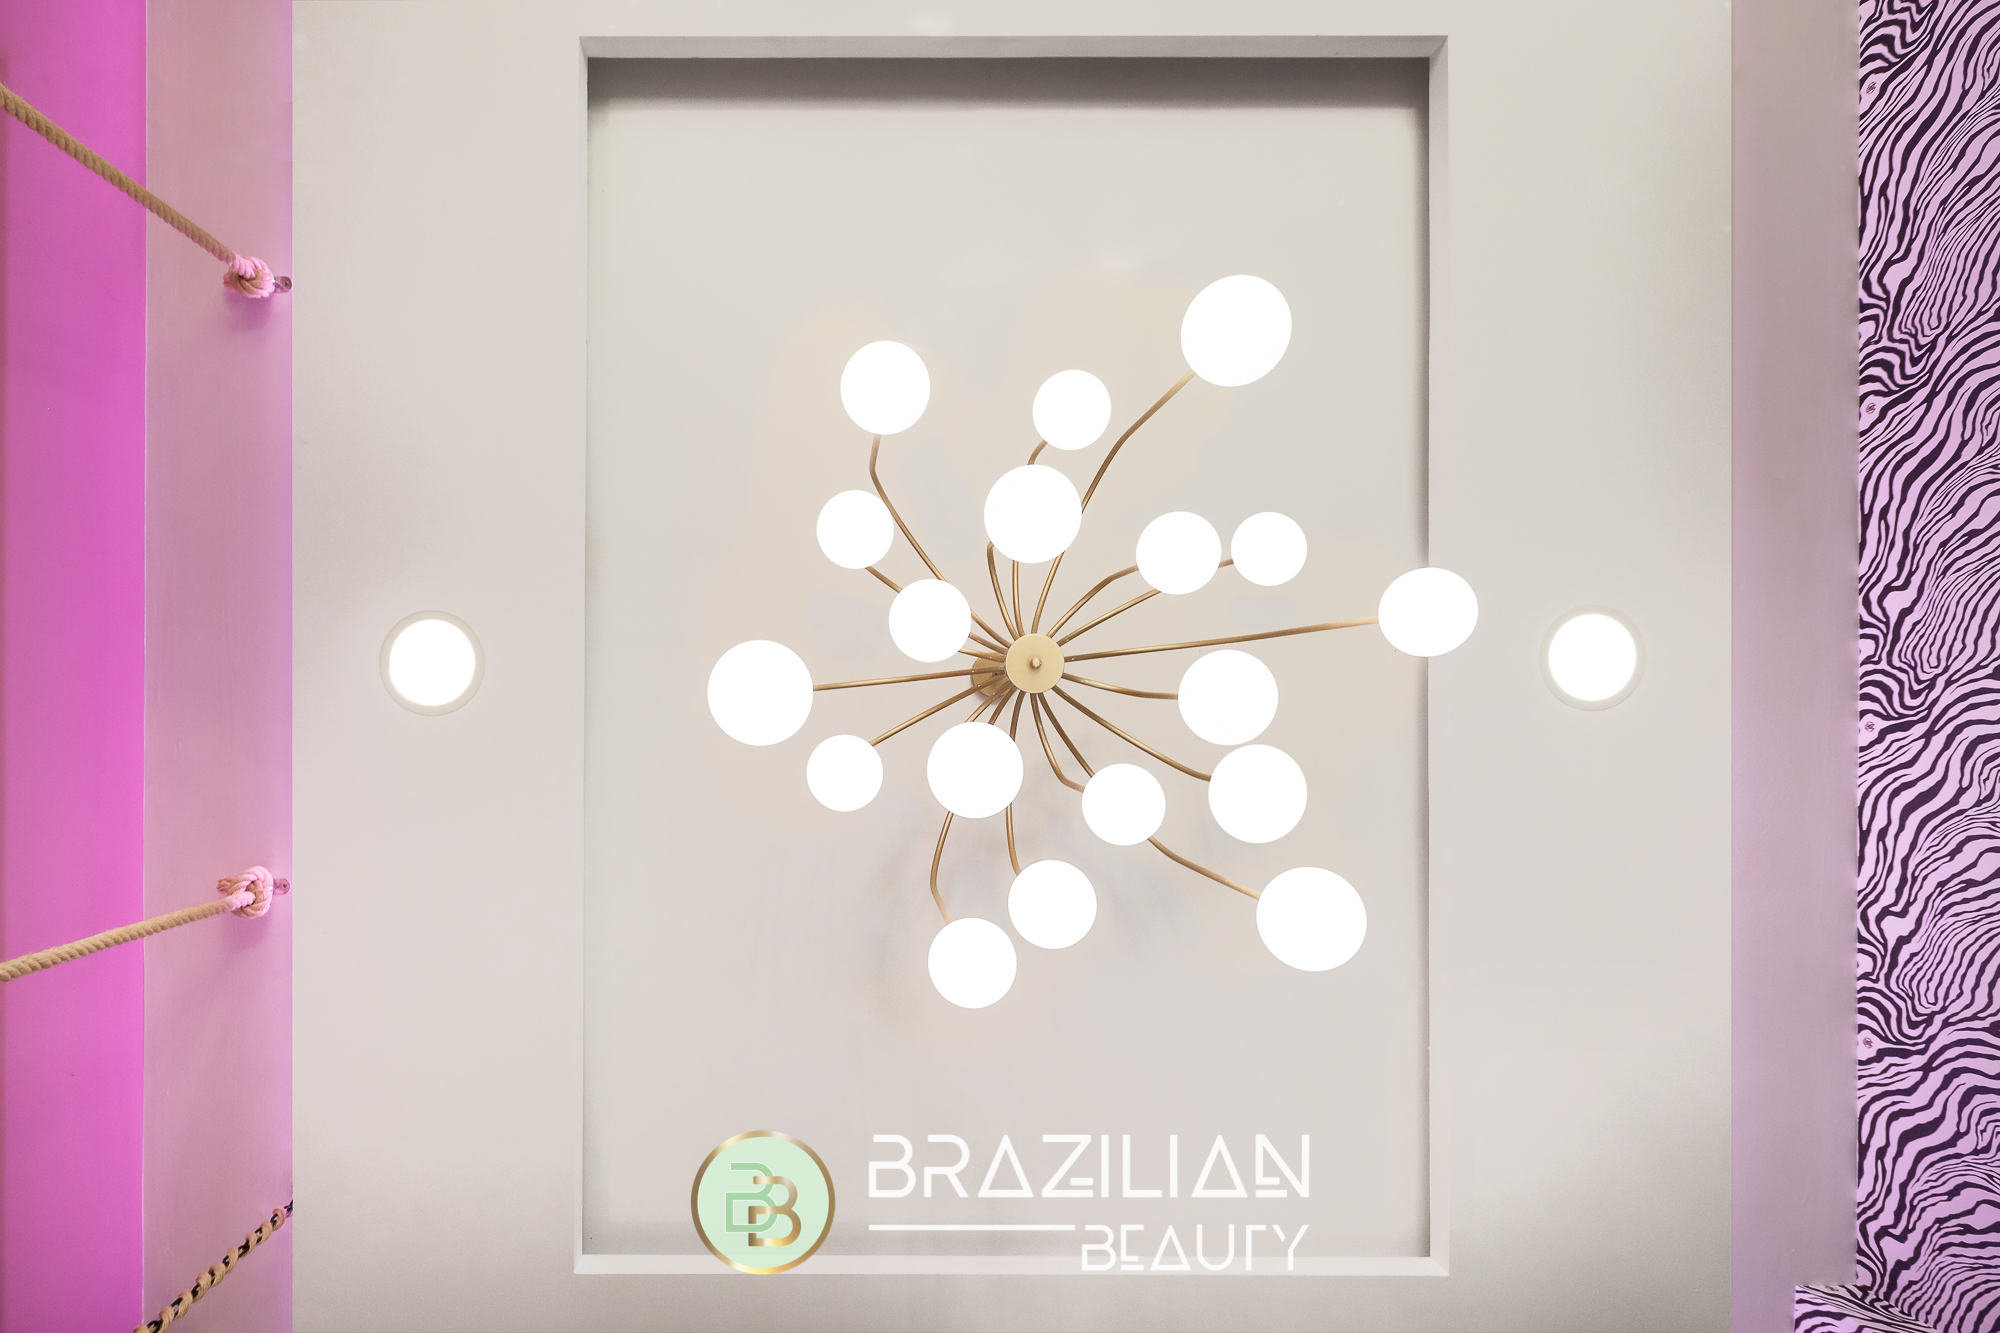 Brazilian Beauty Marbella - Commercial Design by Miccoli